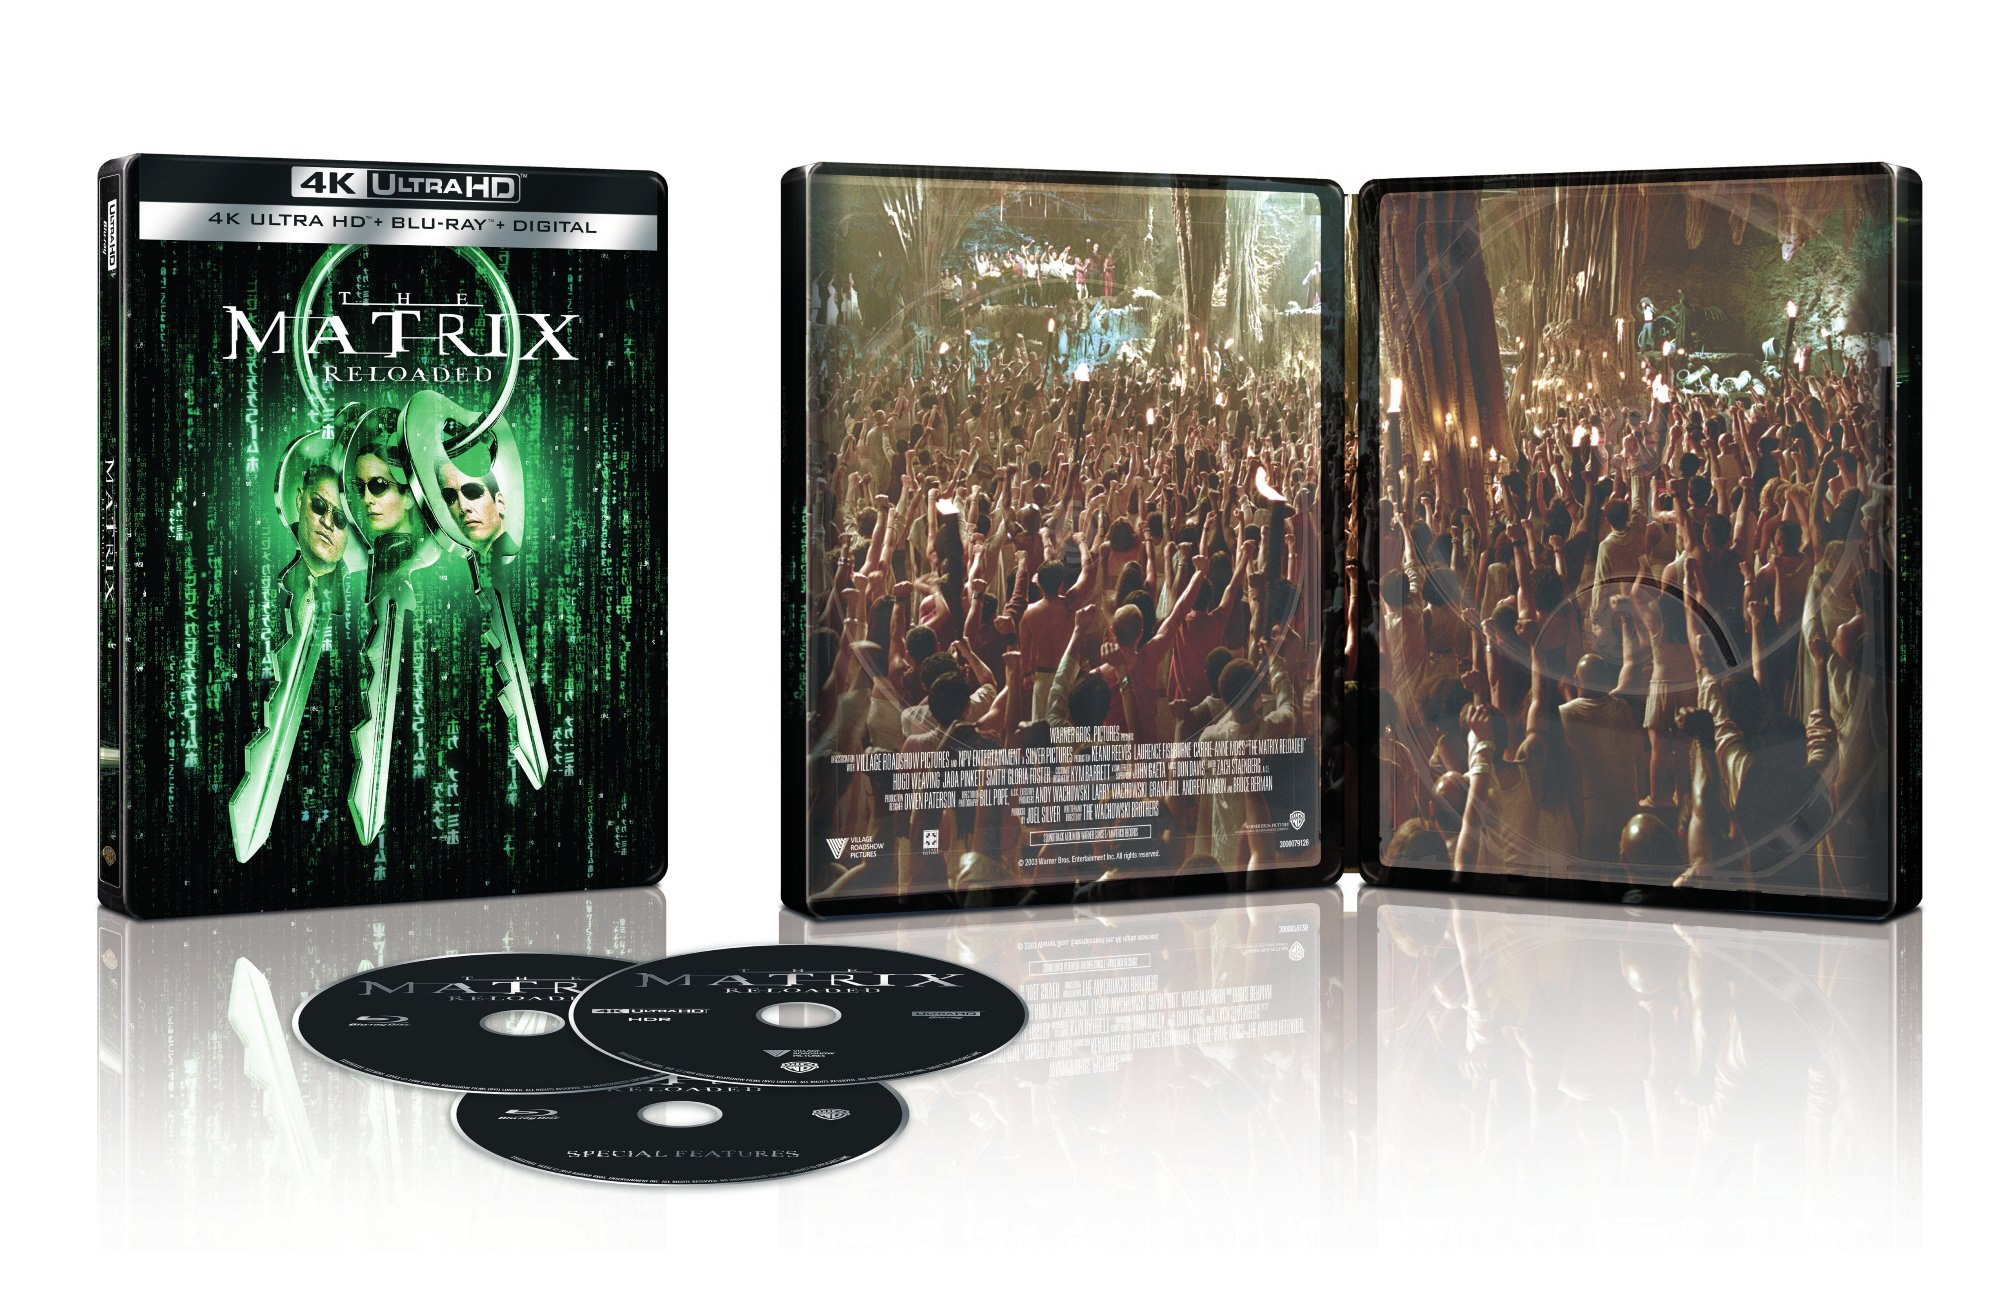 The Matrix Reloaded Steelbook Digital Copy 4k Ultra Hd Blu Ray Blu Ray Only Best Buy 03 Best Buy